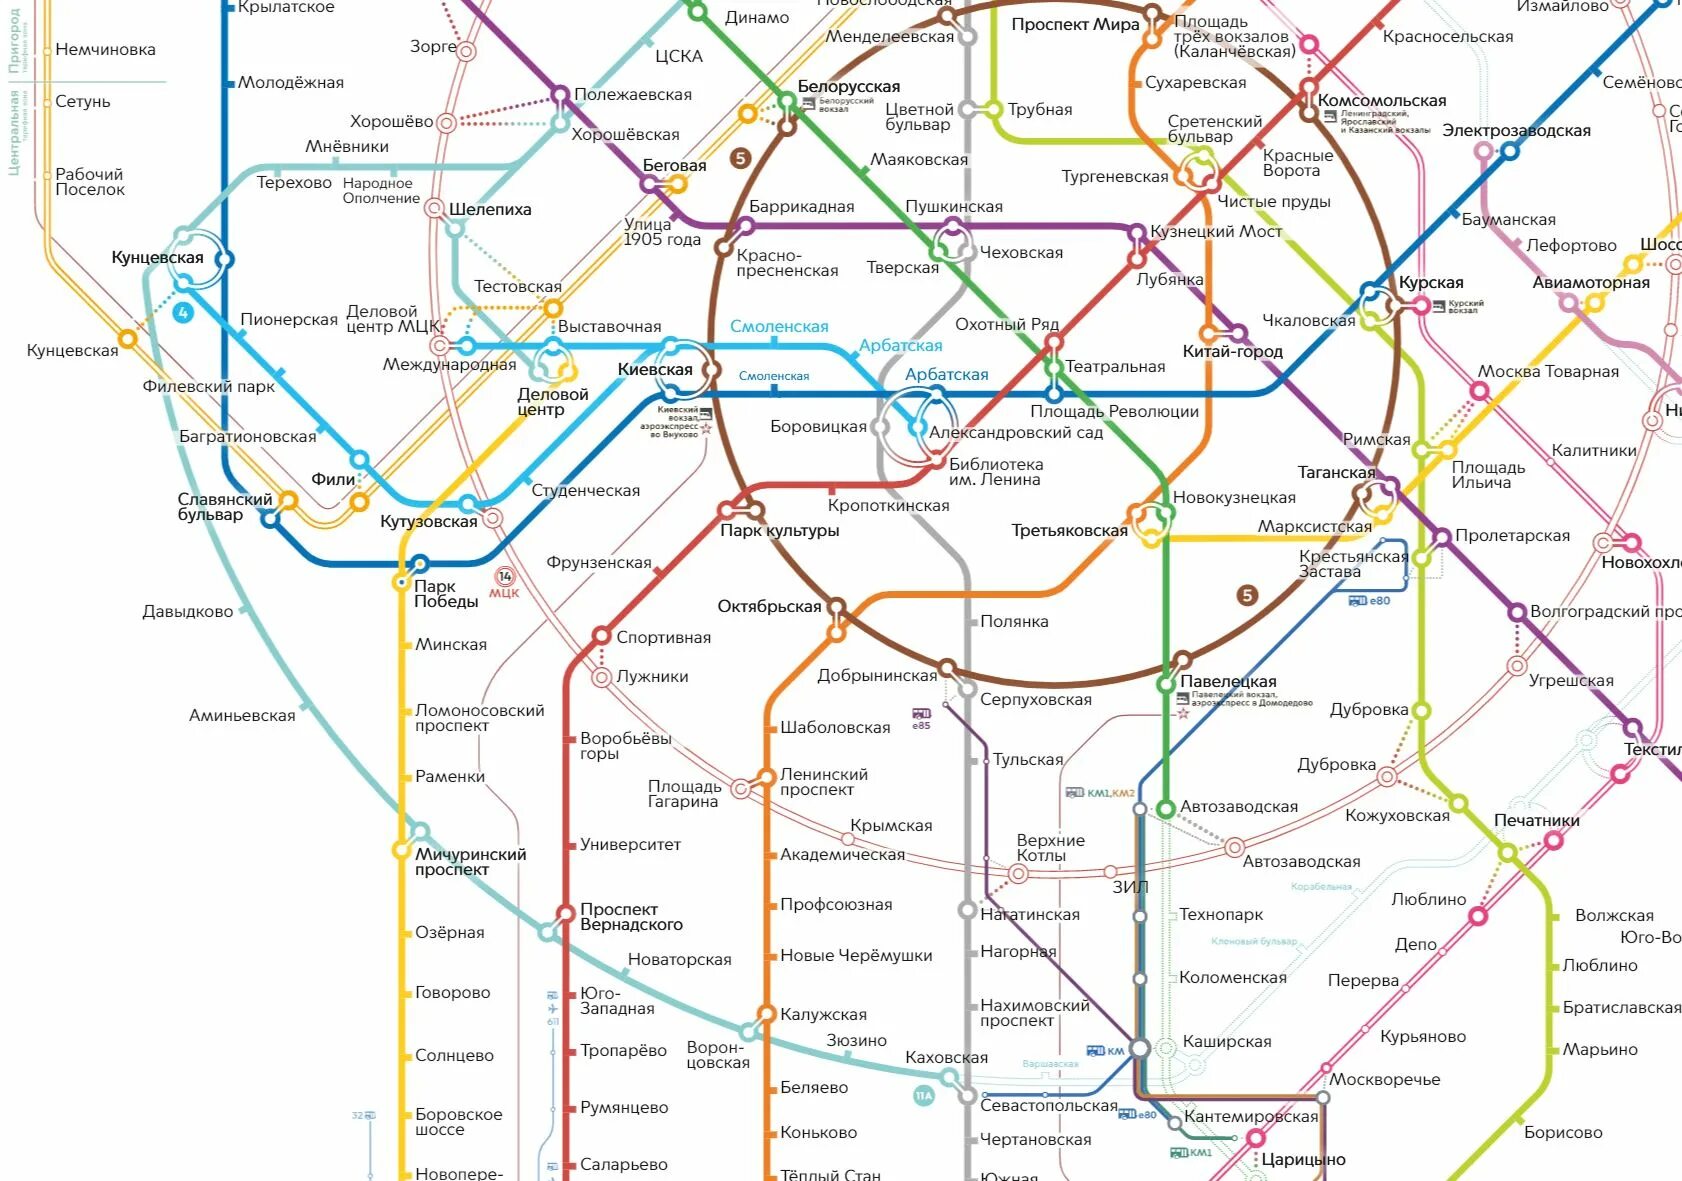 Схема метро москвы с бкл и мцд. Схема метро 2030 год Москва. Московское метро это Москва 2020. Схема метро с БКЛ И МЦД. План схемы метро на 2030.